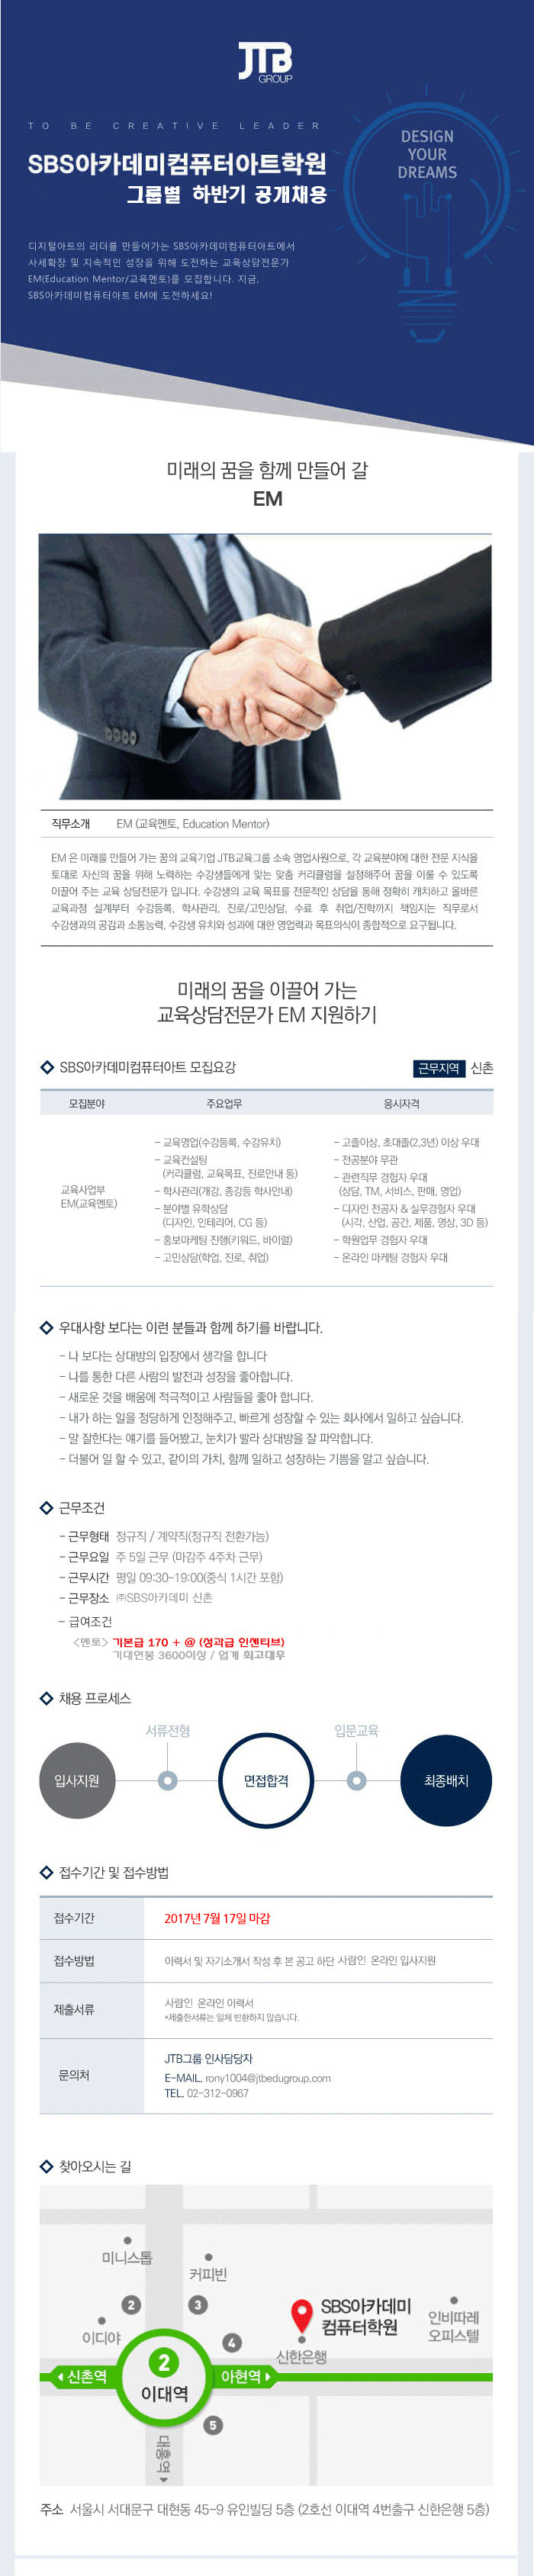 (주)SBS아카데미 본원 하반기 공개채용